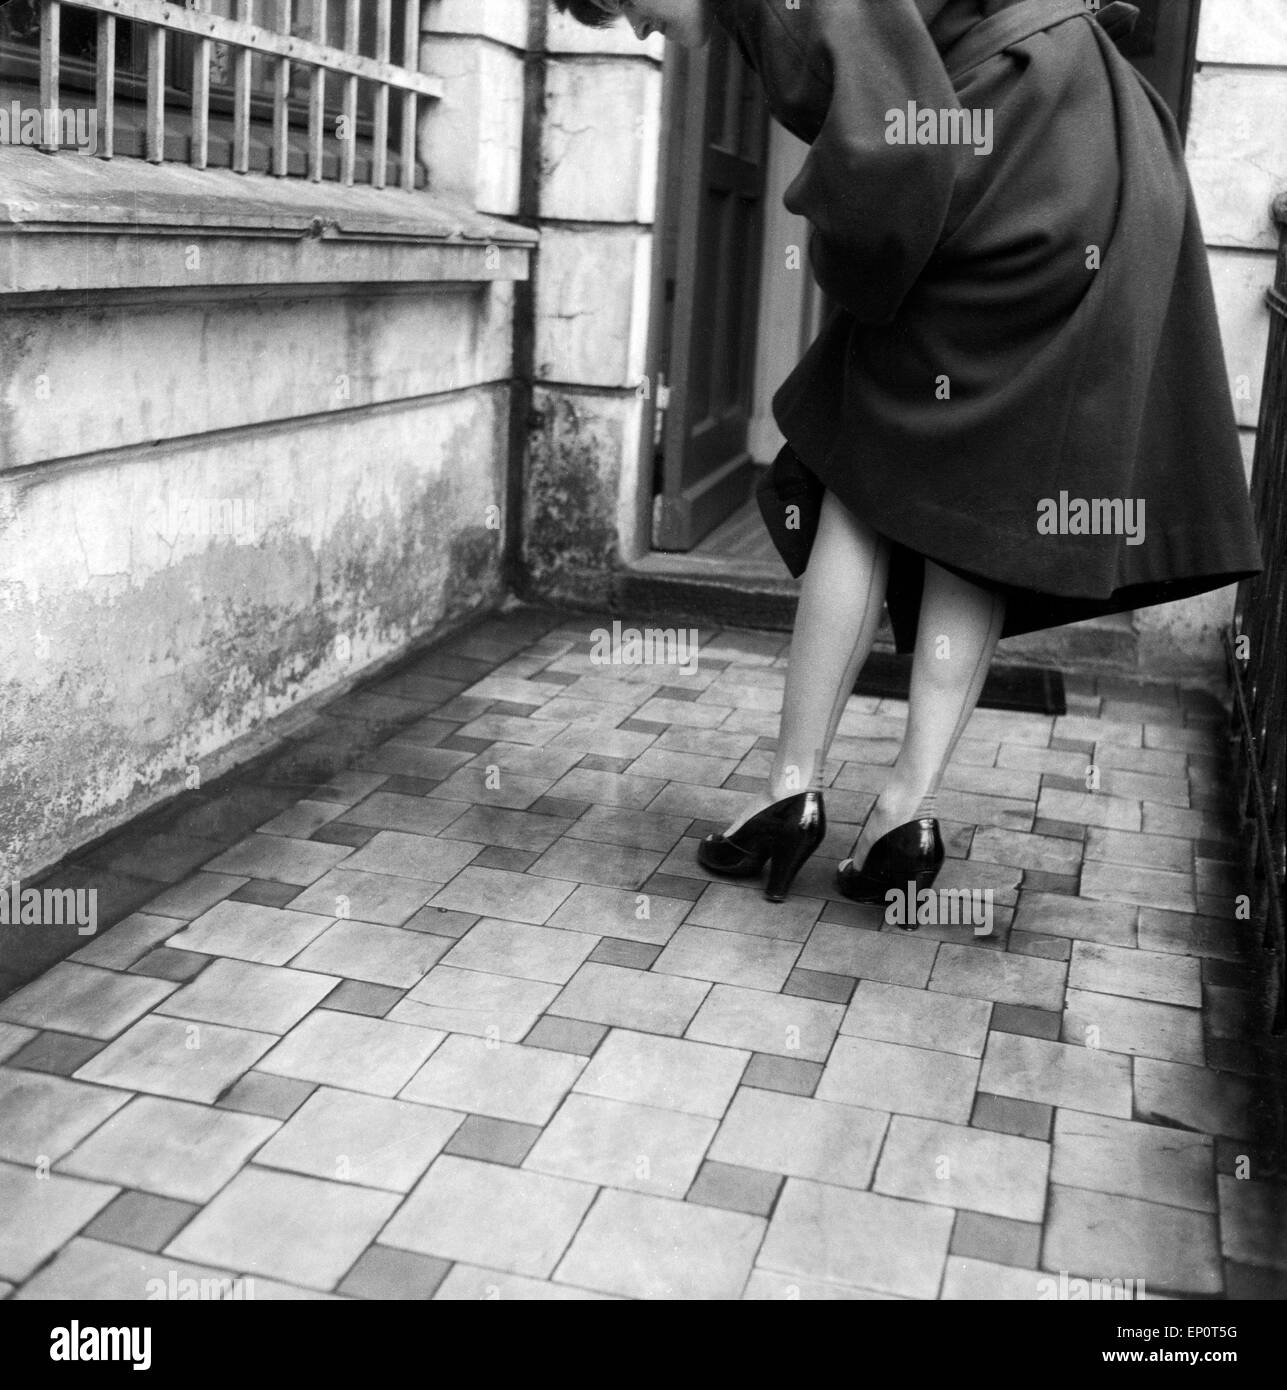 Feine Naht auf der Rückseite einer Damenstrumpfhose, Hamburg 1956. Fine fissure at the rear of a lady's stockings, Hamburg 1956. Stock Photo